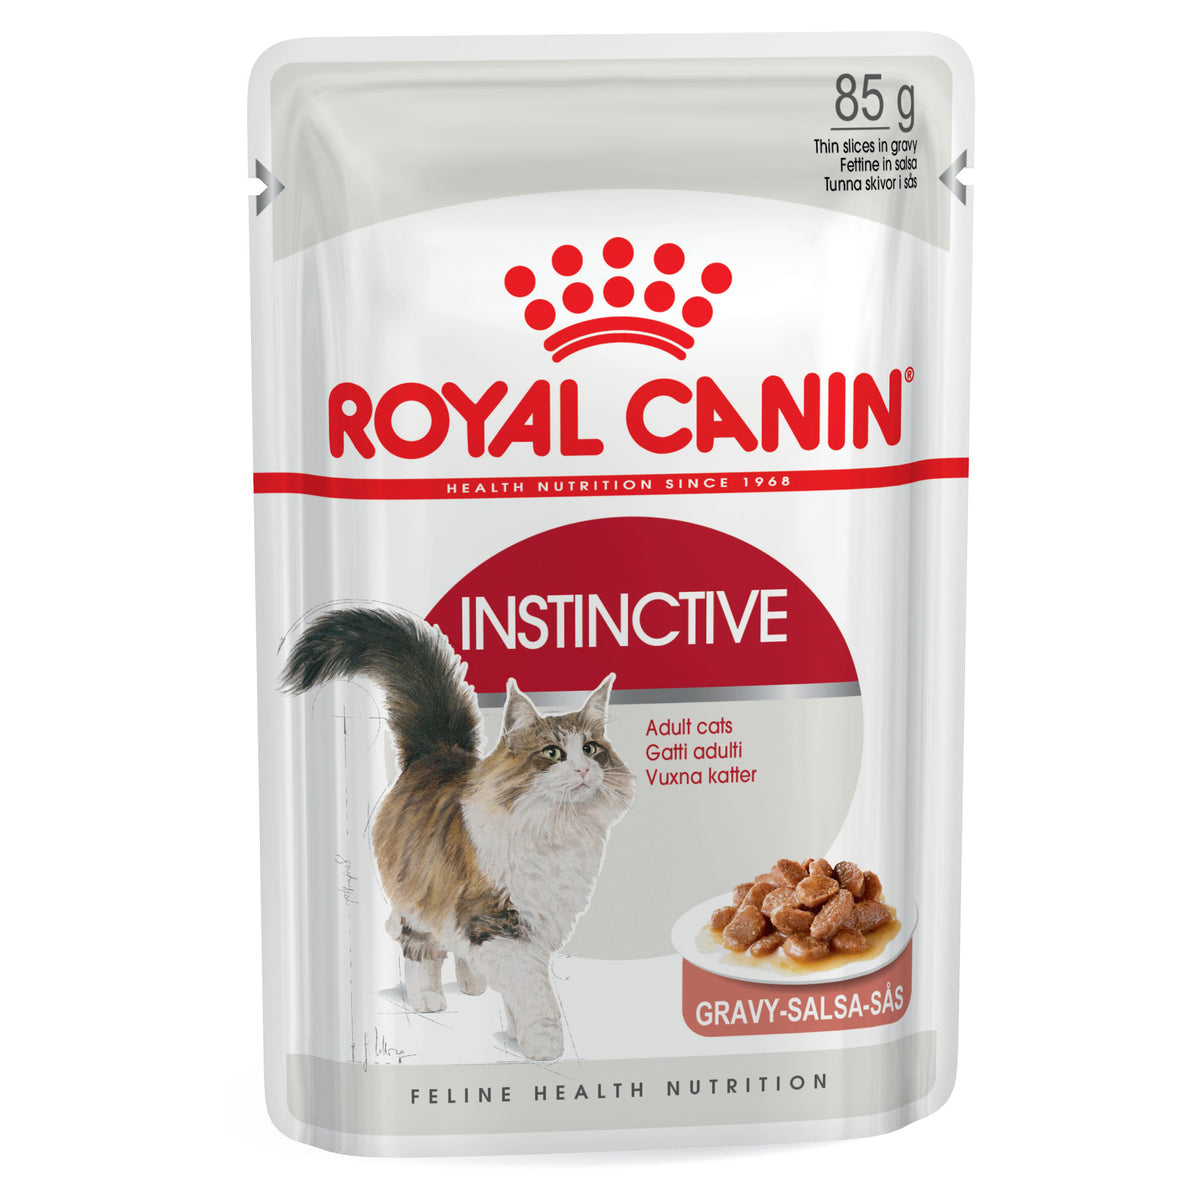 Royal Canin Instinctive Gravy Pouch